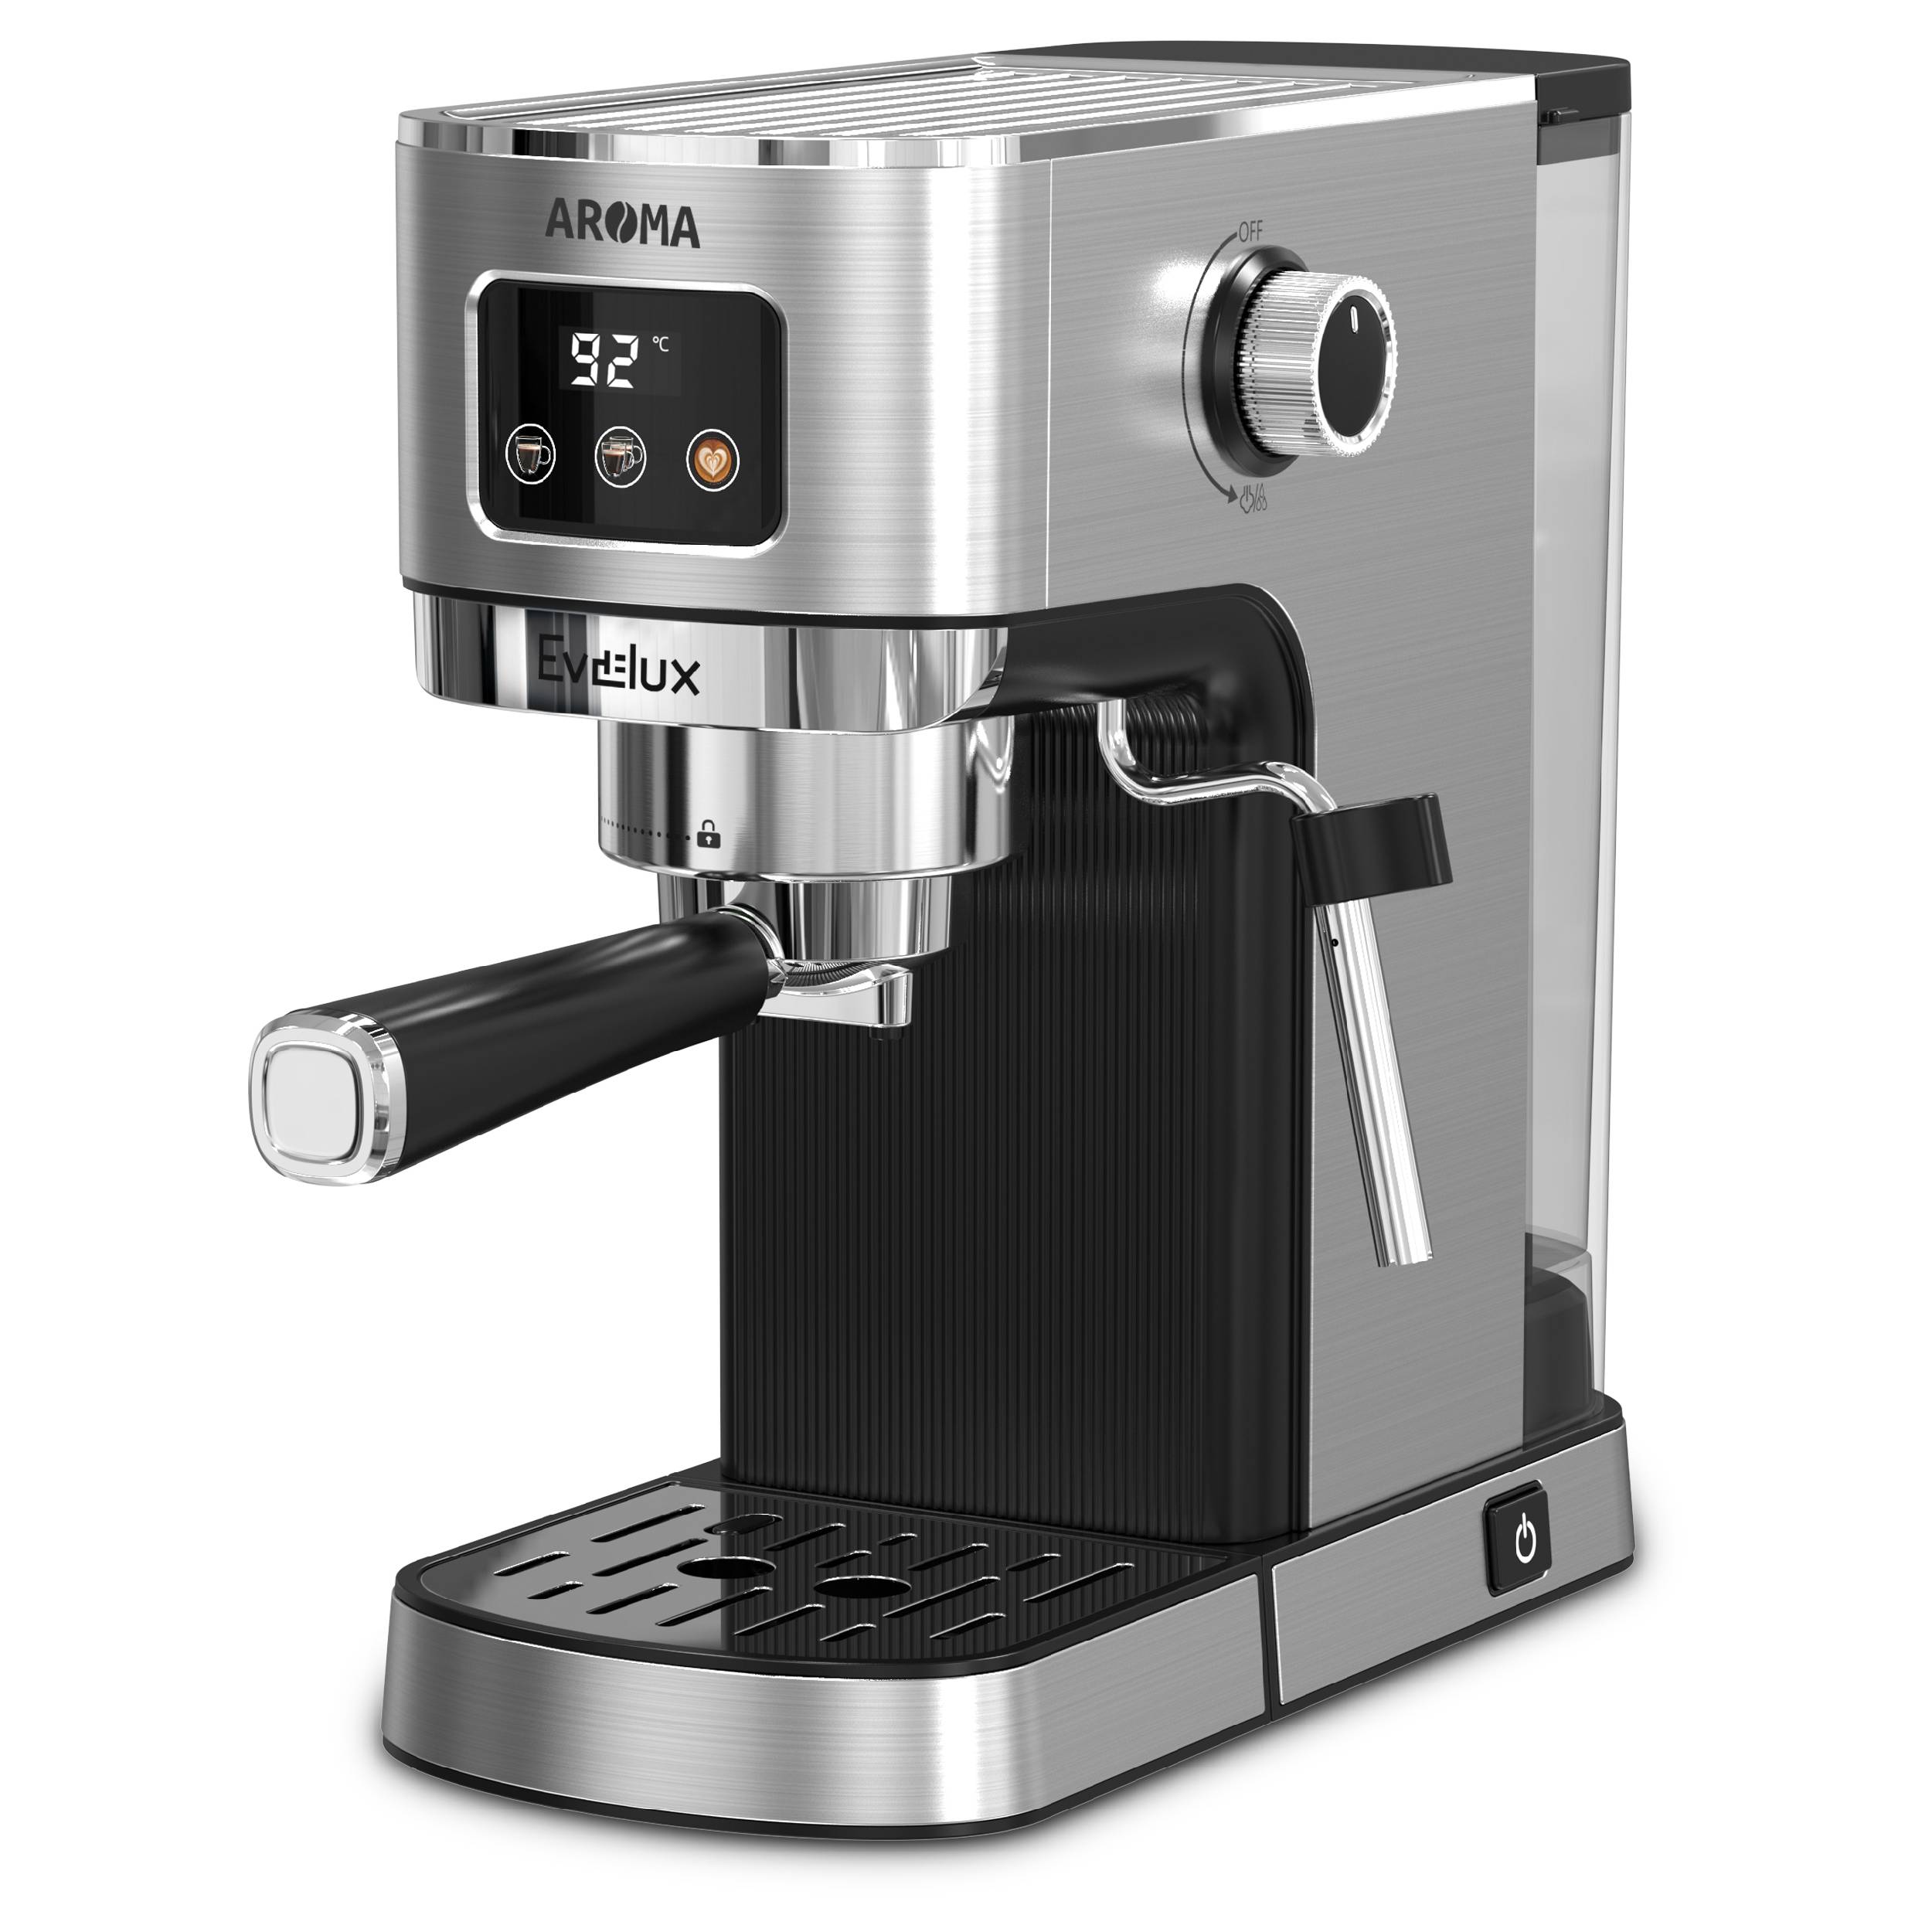 Рожковая кофеварка Evelux ECM 1009 Aroma серебристый, серый рожковая кофеварка vitek vt 1509 серый